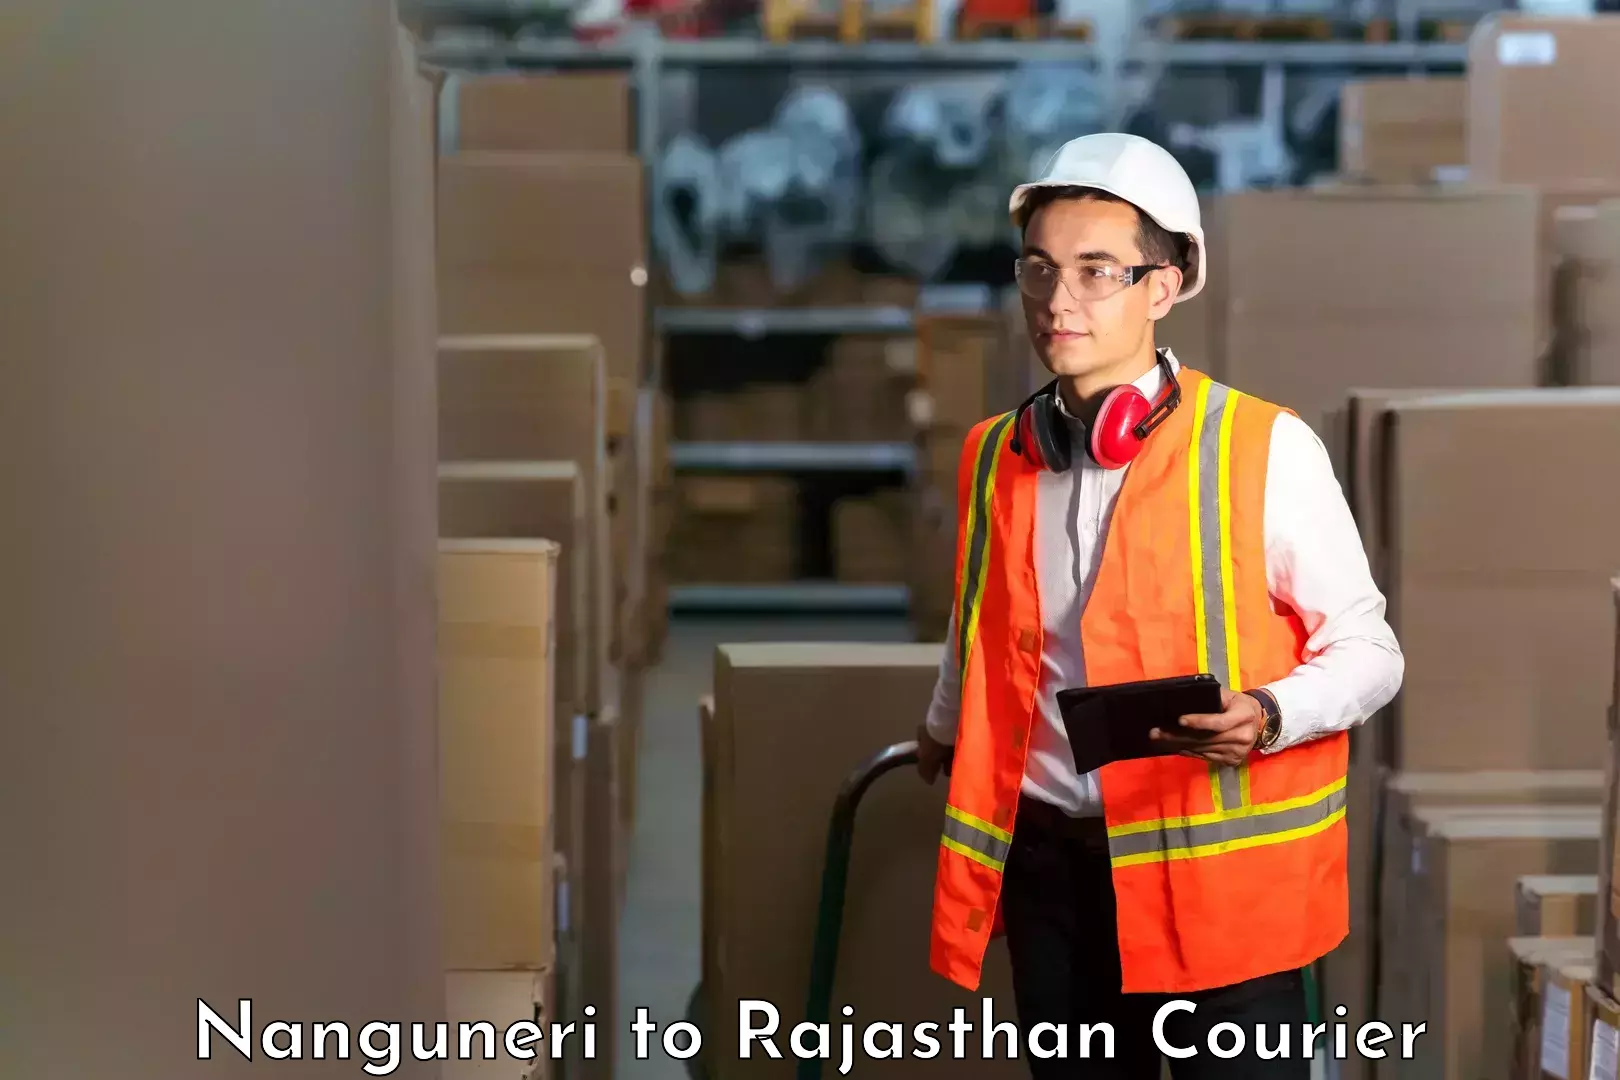 Global freight services Nanguneri to Rajasthan